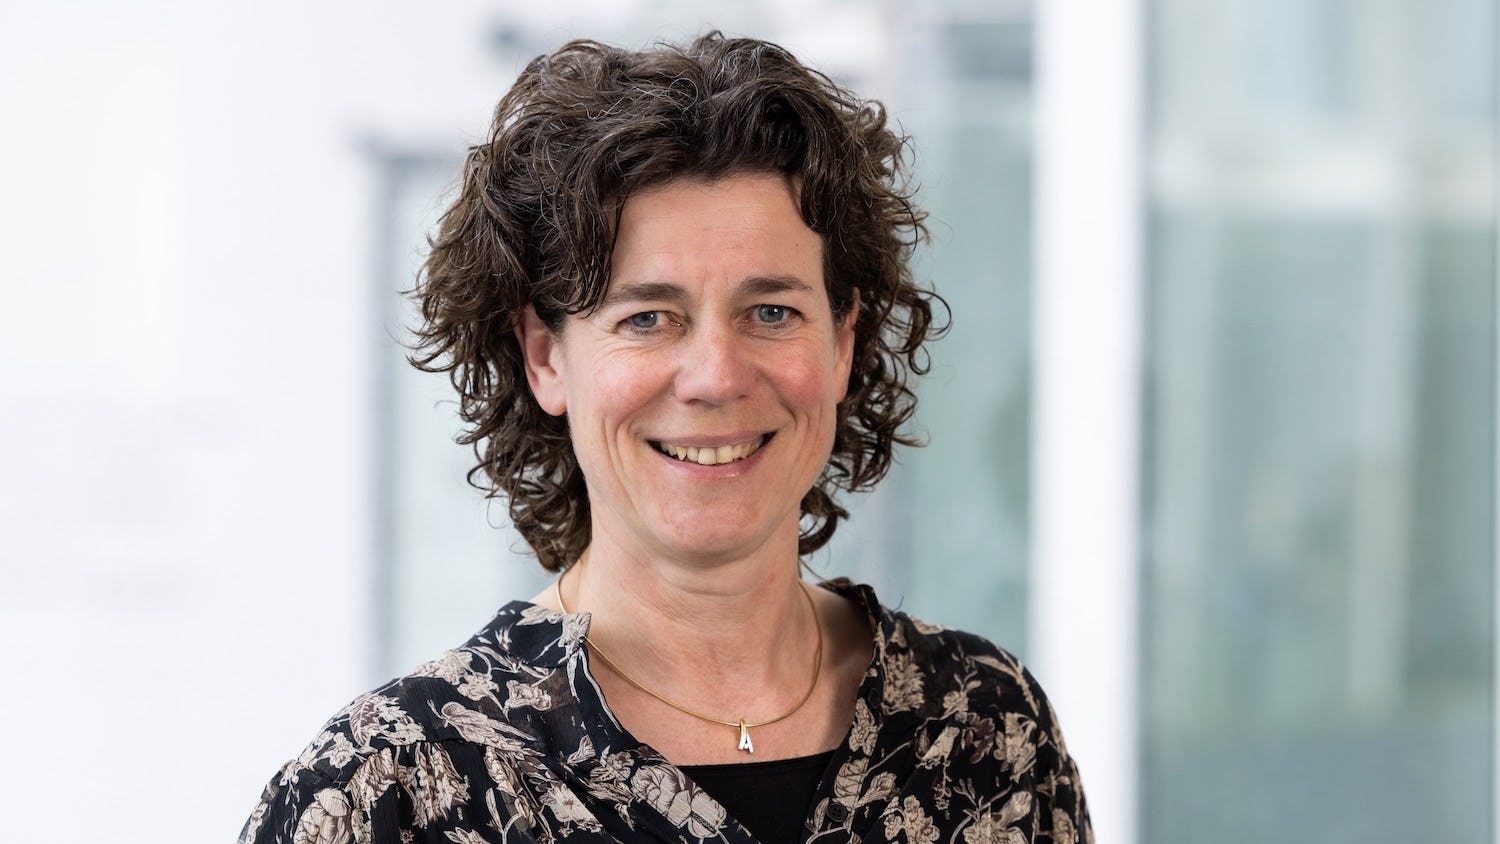 Myriam van de Vorst, adjunct-directeur Personenschade a.s.r. over aanpak letselschade.